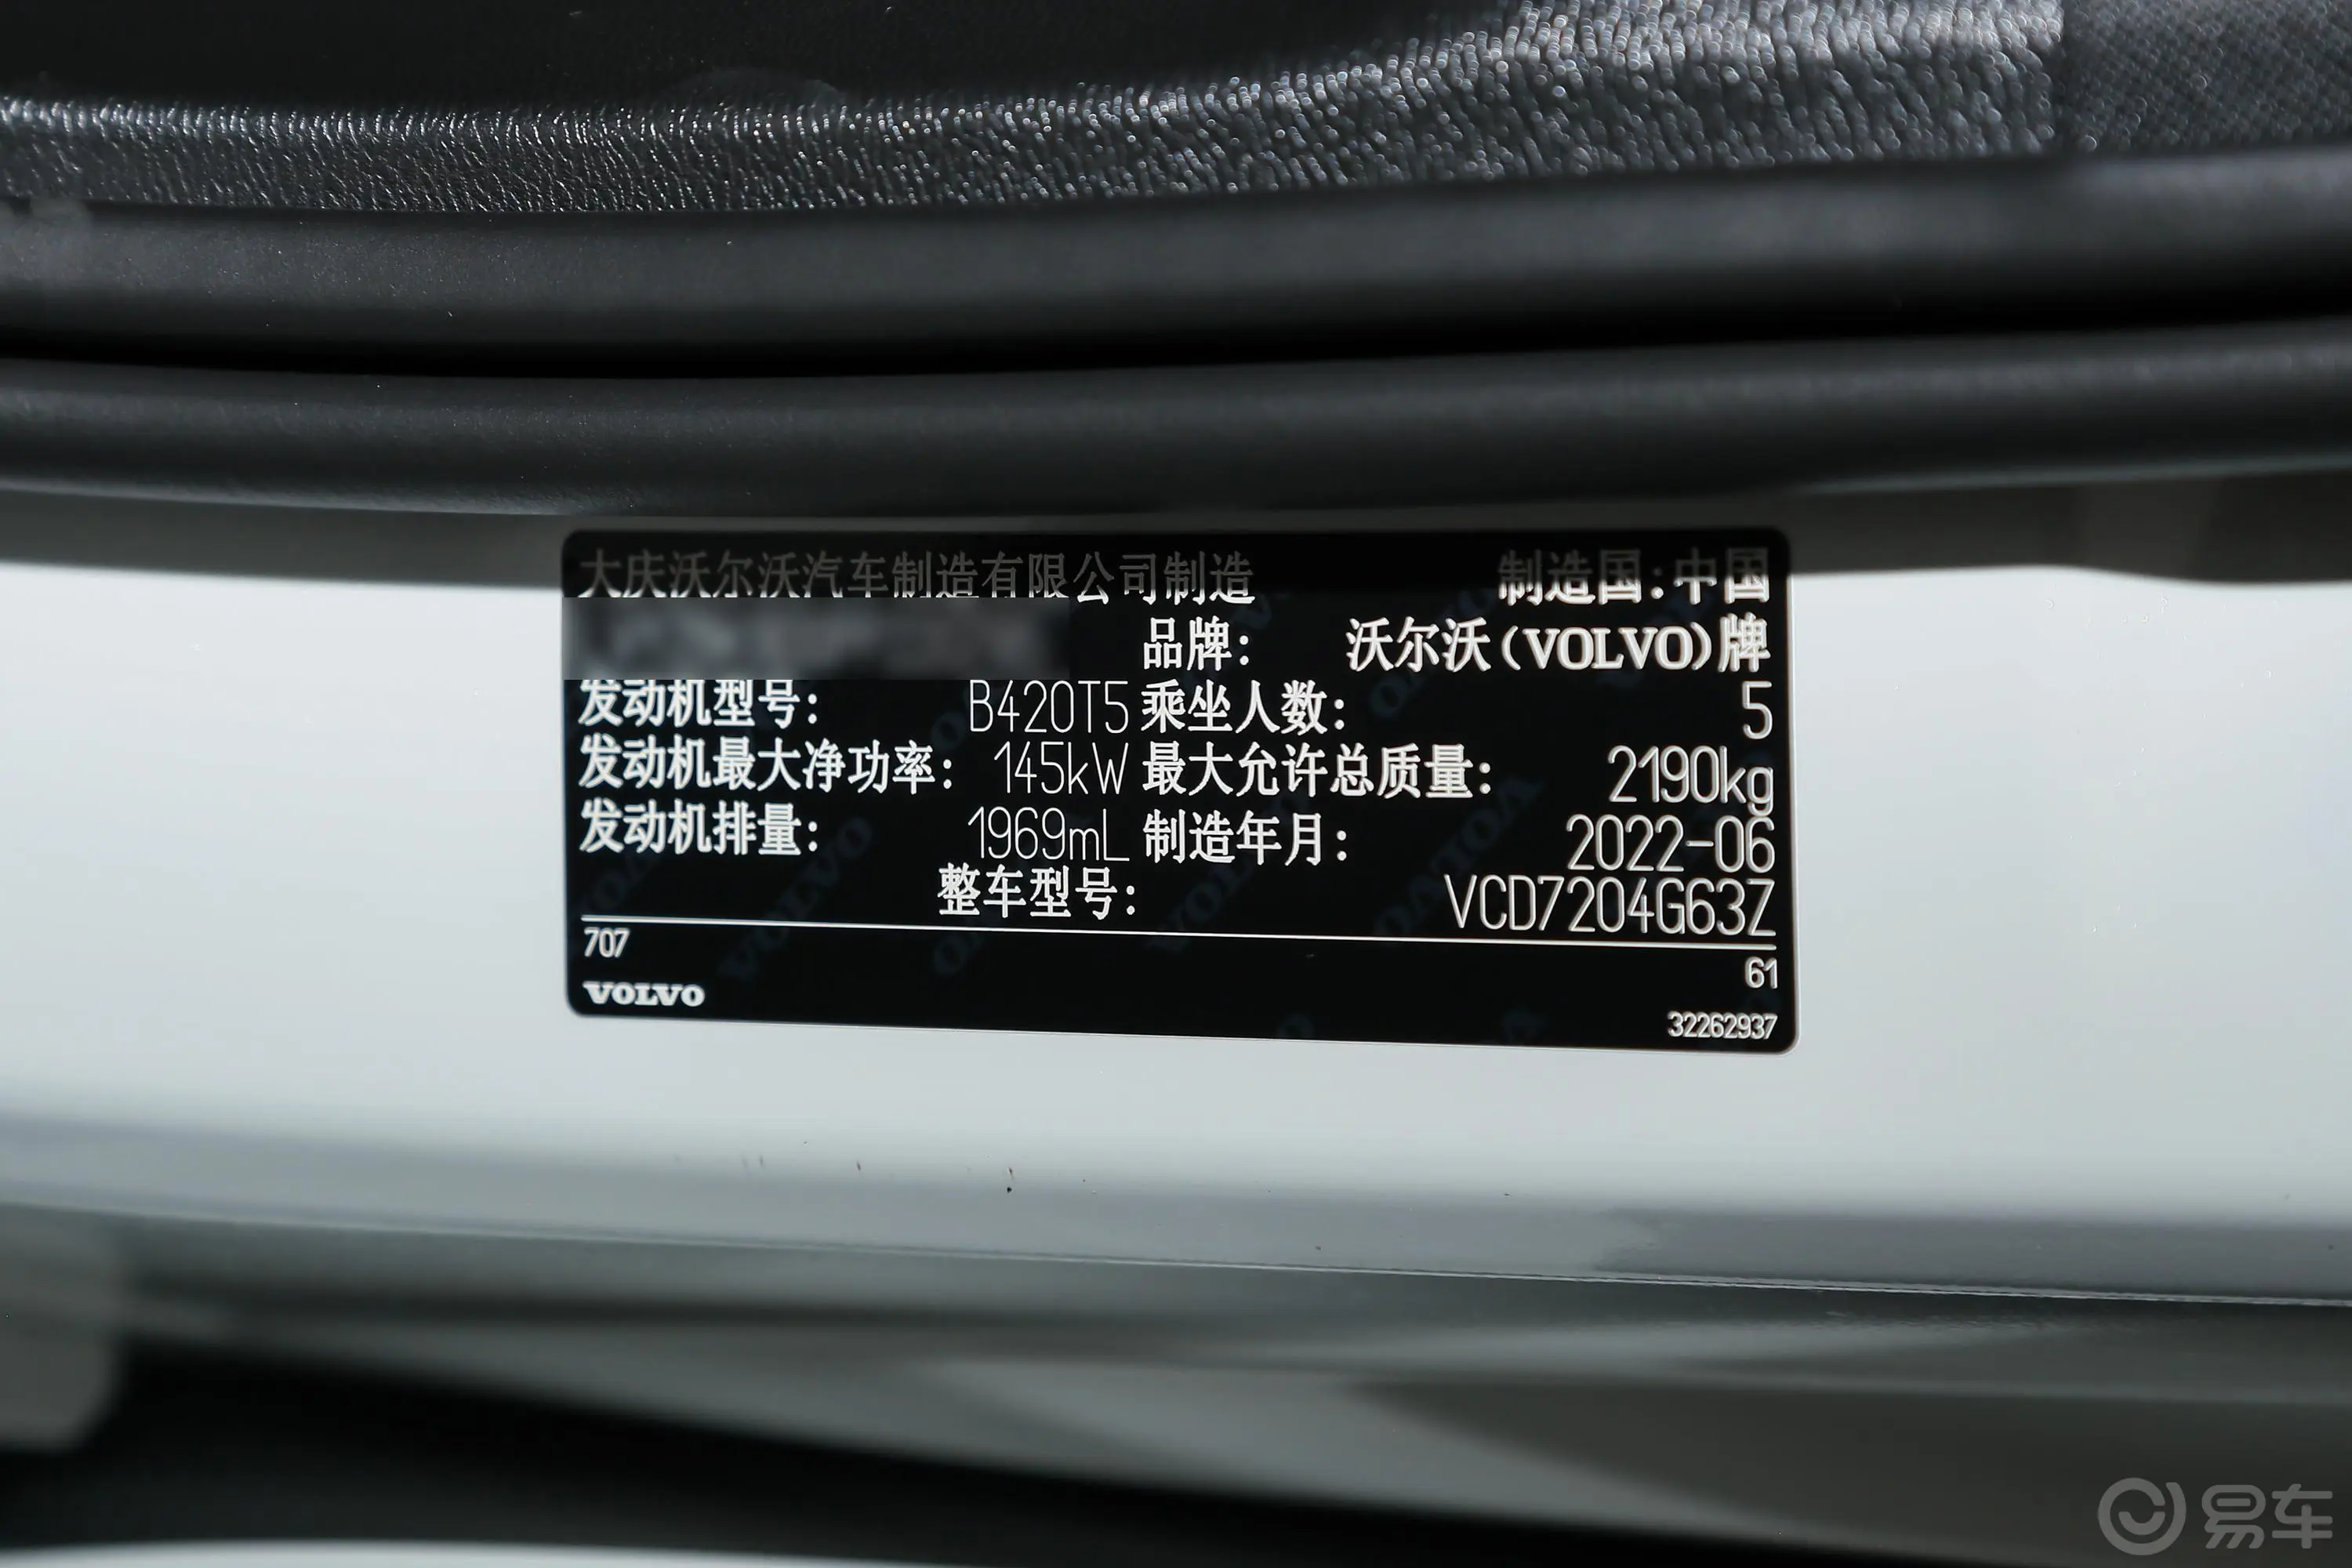 沃尔沃S60B4 智逸豪华版车辆信息铭牌